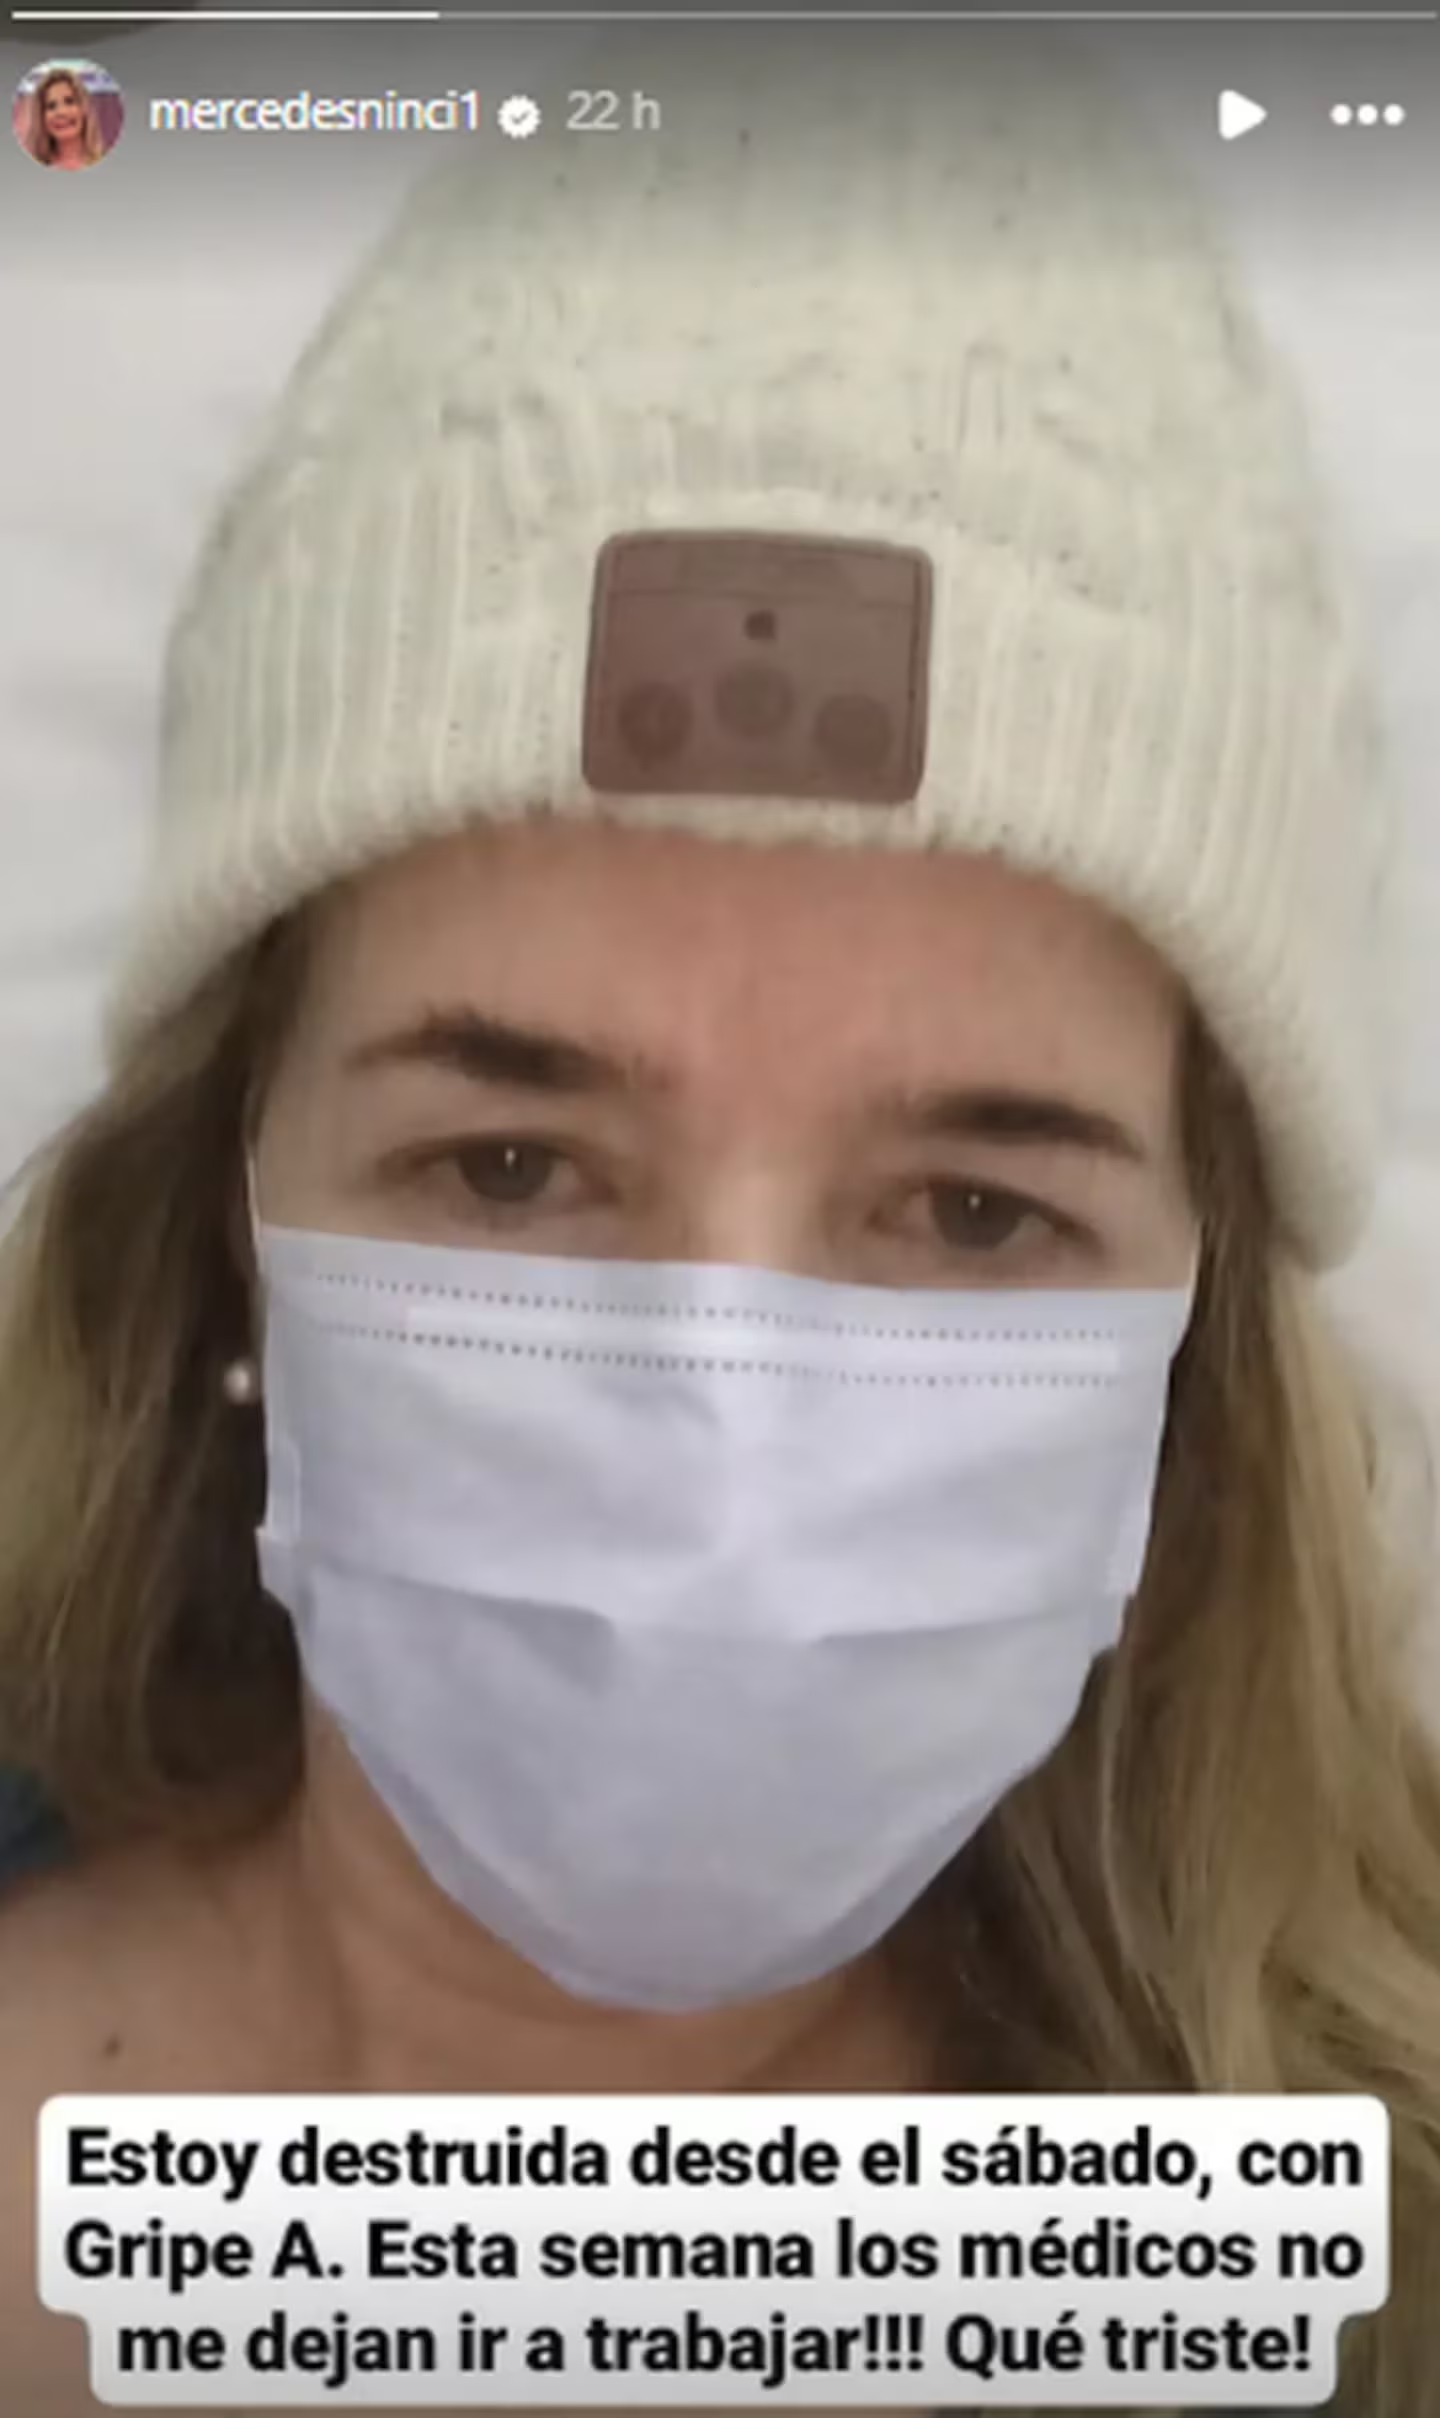 Mercedes Ninci confirmó que tiene gripe A: "Estoy destruida" • Canal C